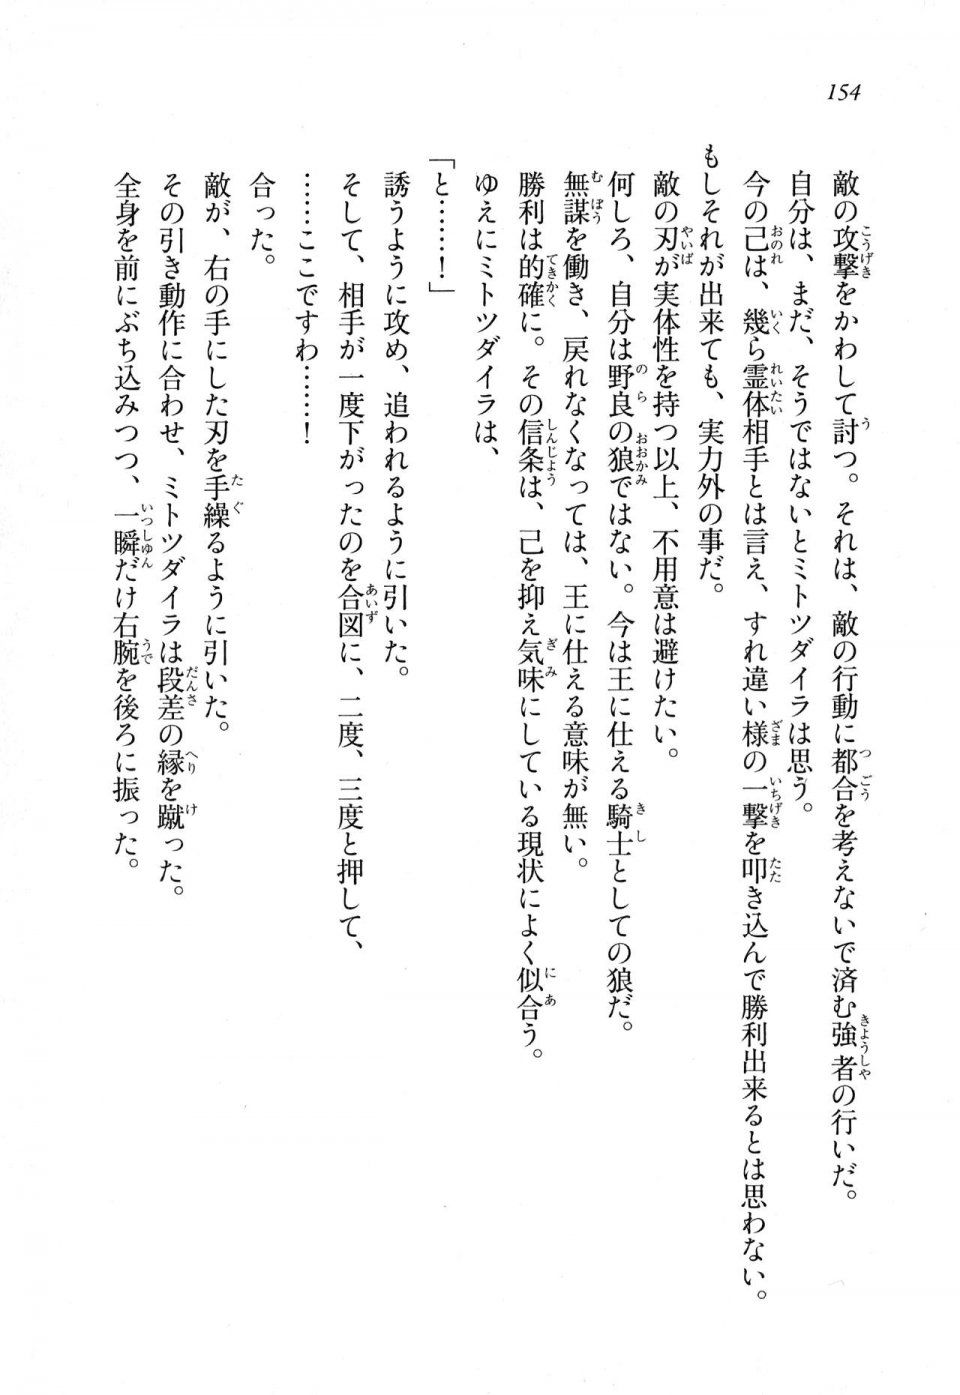 Kyoukai Senjou no Horizon LN Sidestory Vol 1 - Photo #152